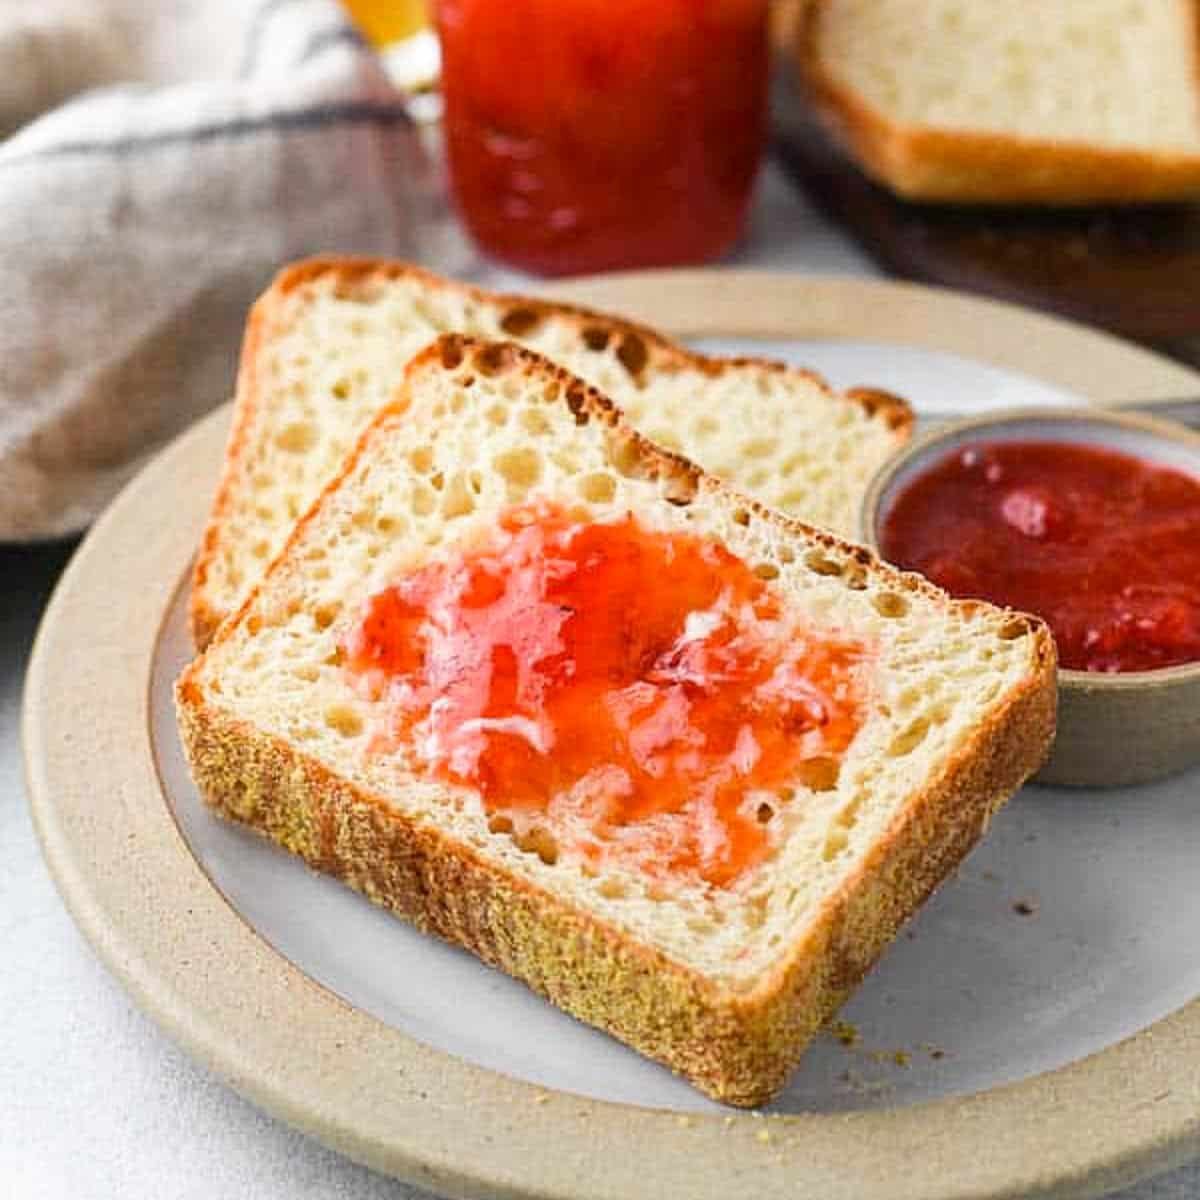 Homemade English Muffin Bread Recipe - No Knead Bread